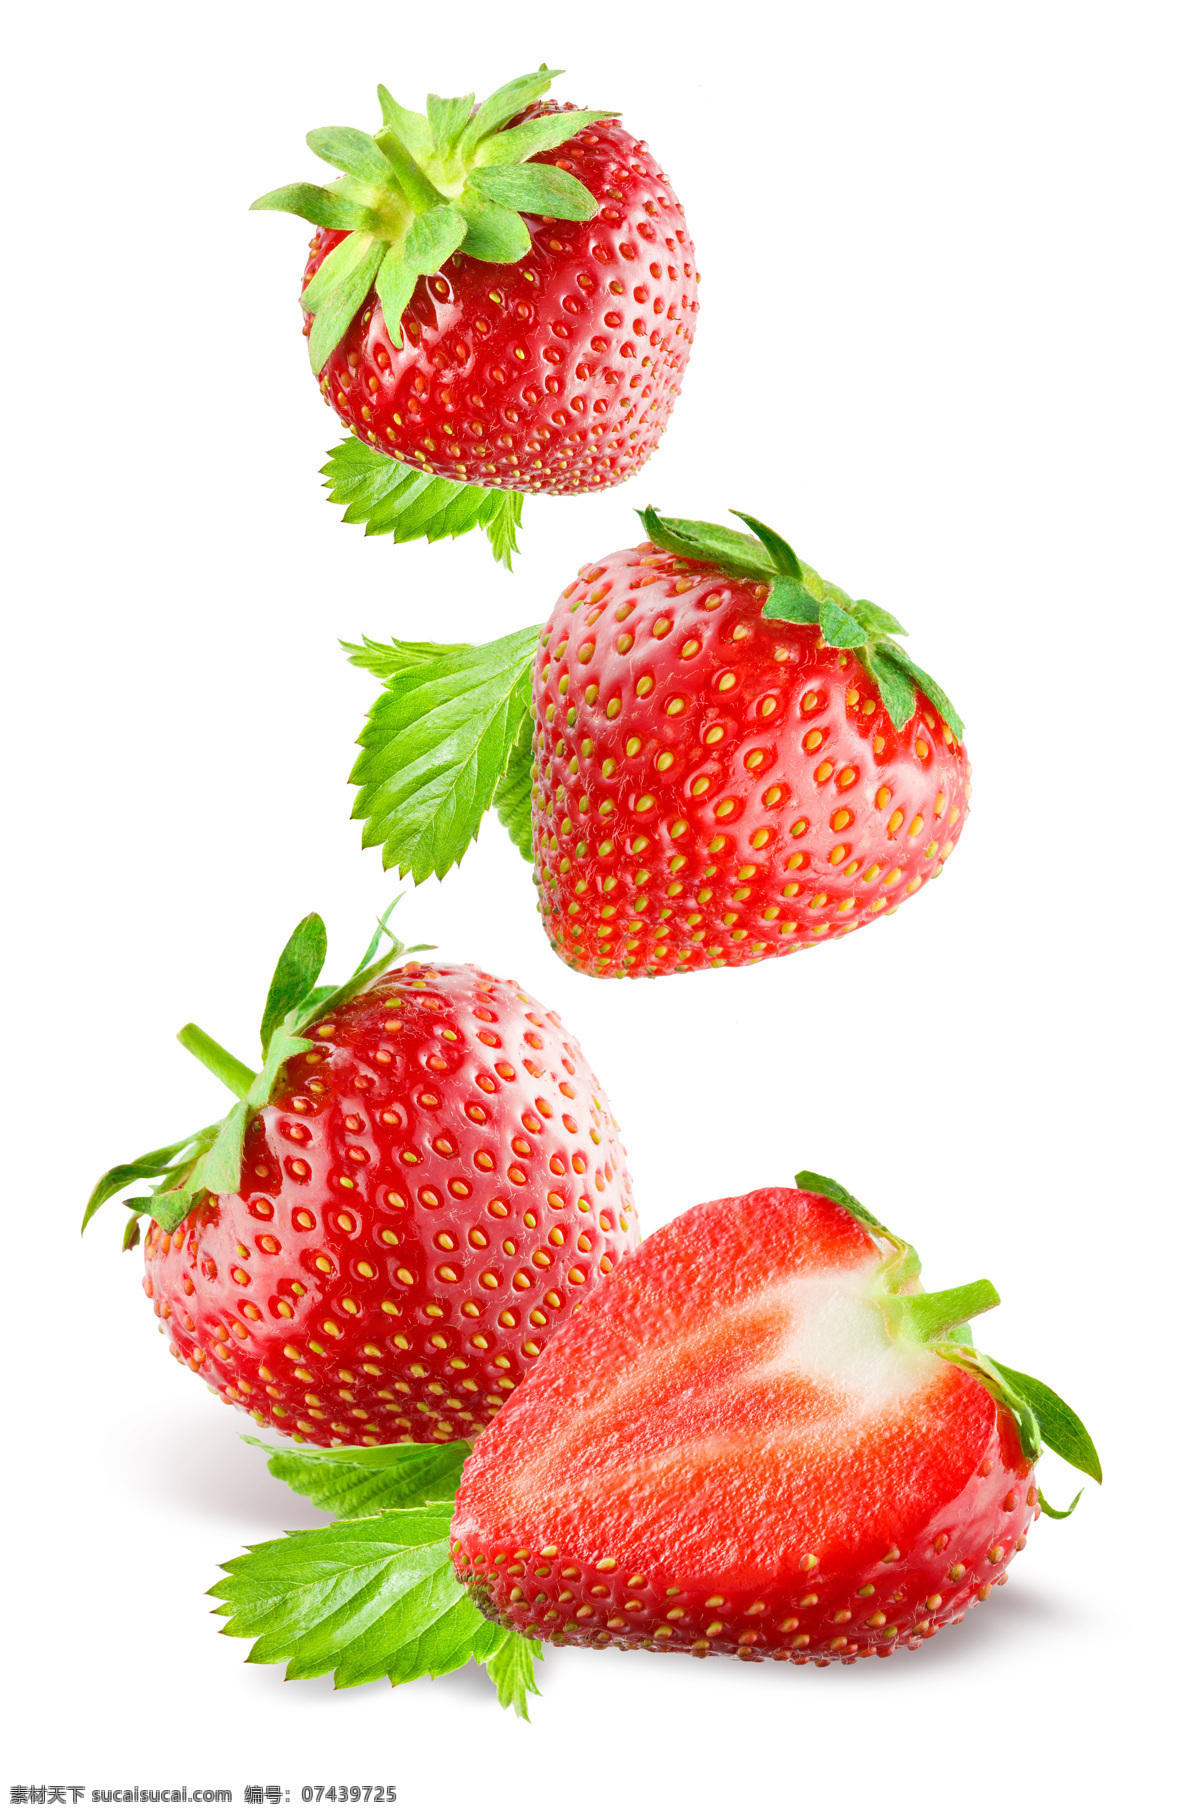 新鲜草莓摄影 草莓 草莓果肉 新鲜草莓 新鲜水果 草莓摄影 水果蔬菜 餐饮美食 白色